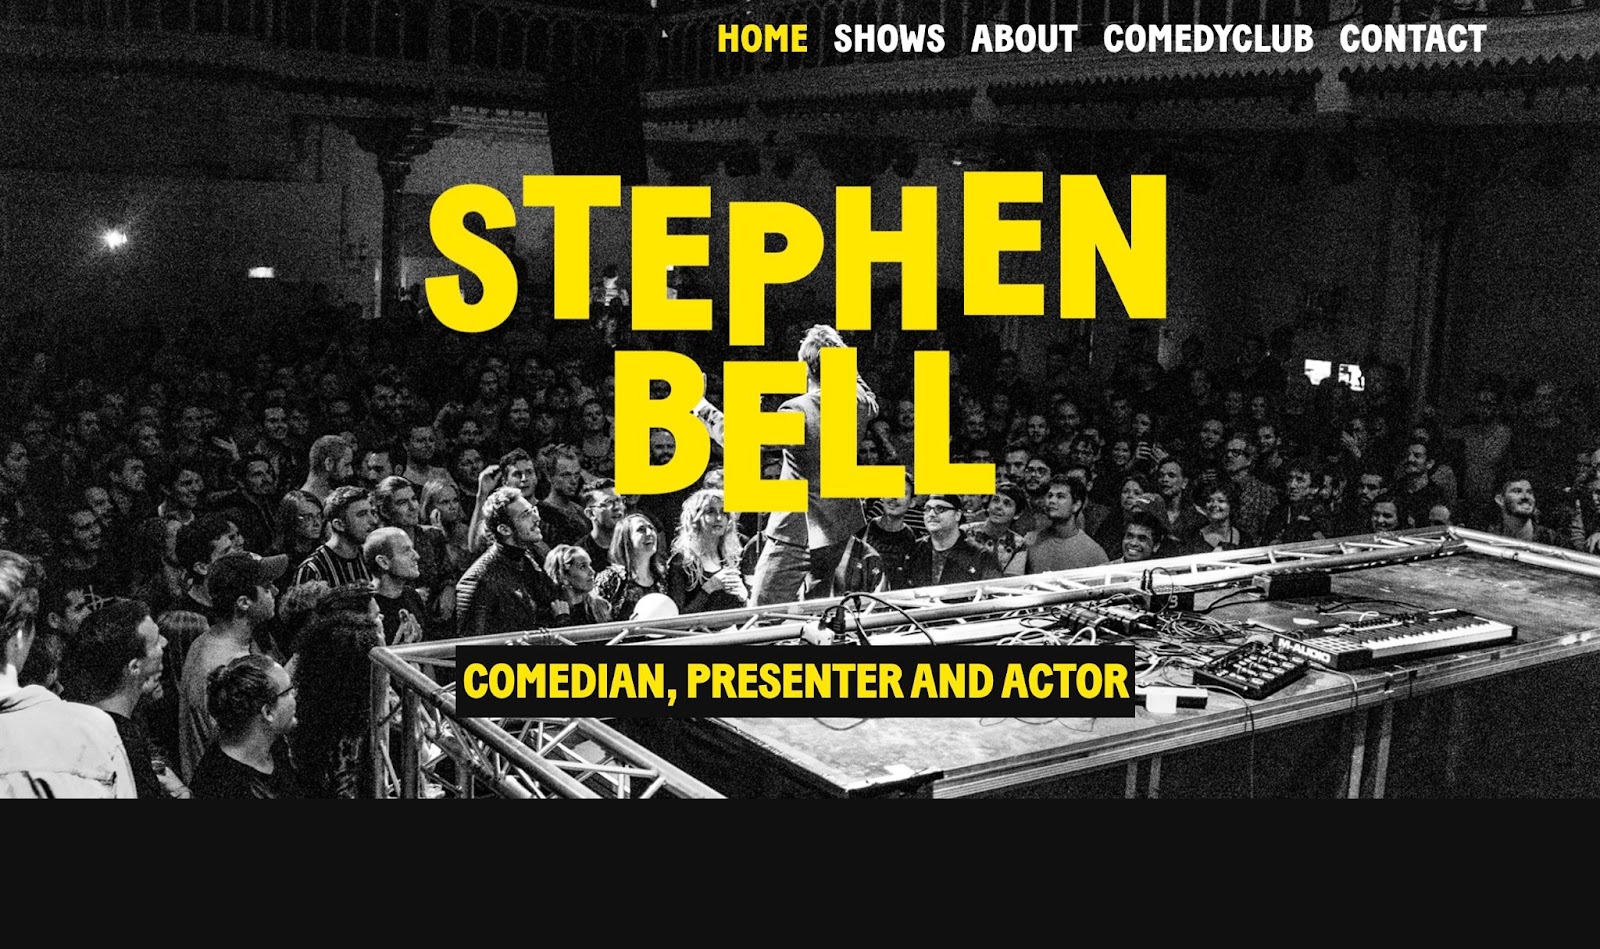 一群喜剧演员正在听喜剧演员斯蒂芬贝尔的镜头。图片上方是粗体黄色文字，上面写着“STEPHEN BELL”，下面是“COMEDIAN、PRESENTER AND ACTOR”。